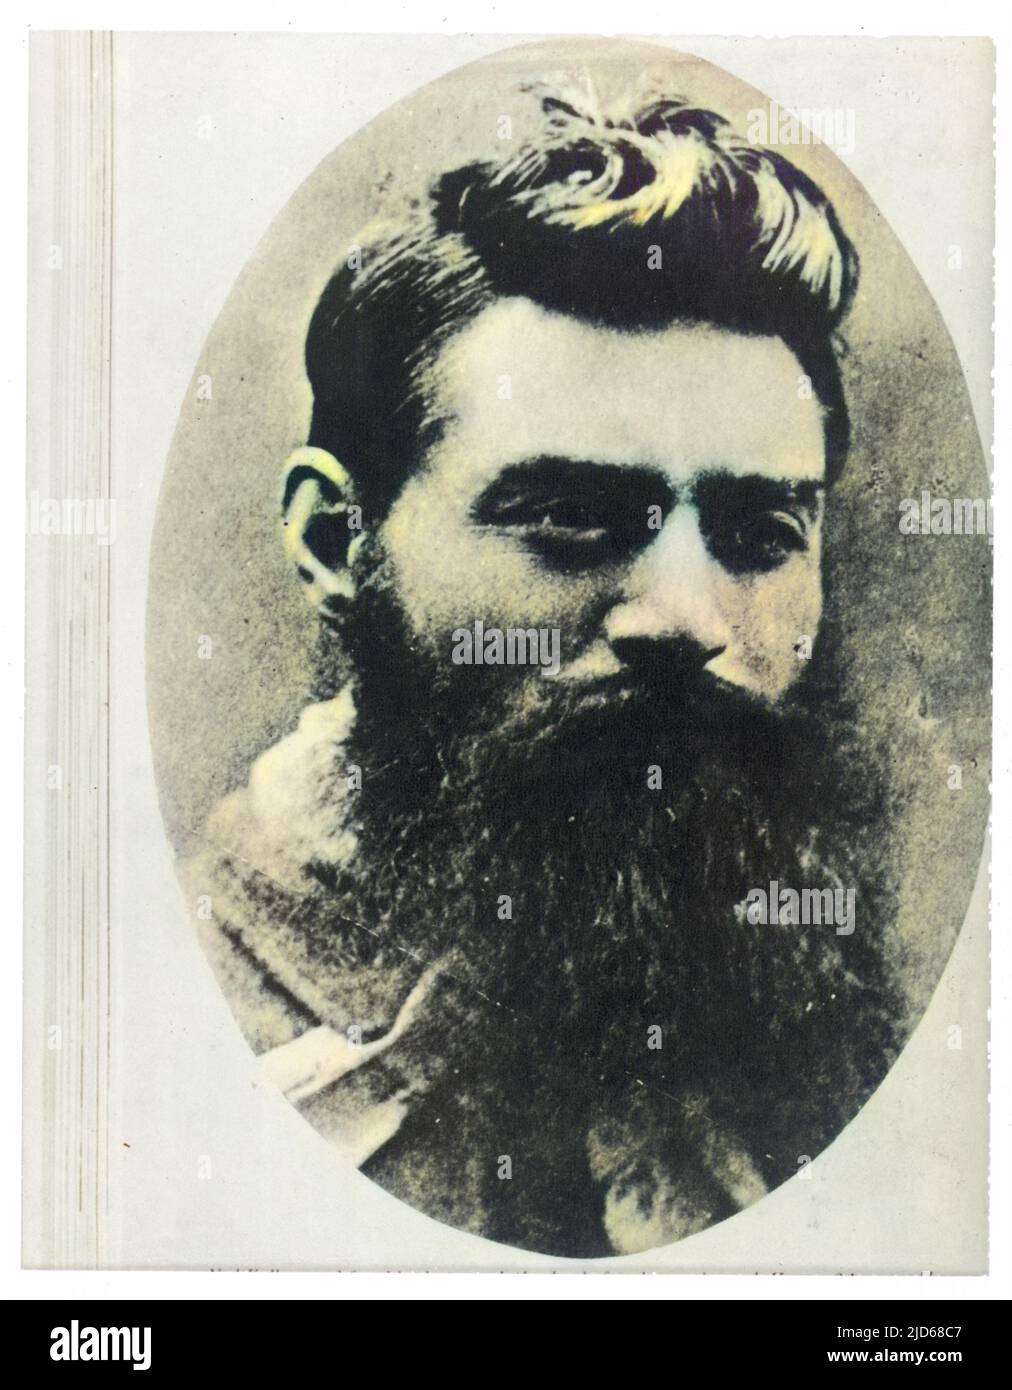 Ritratto di Ned Kelly boscandranger australiano, preso il giorno prima della sua appesa all'età di 24 anni. Versione colorata di : 10086402 Data: 1880 Foto Stock